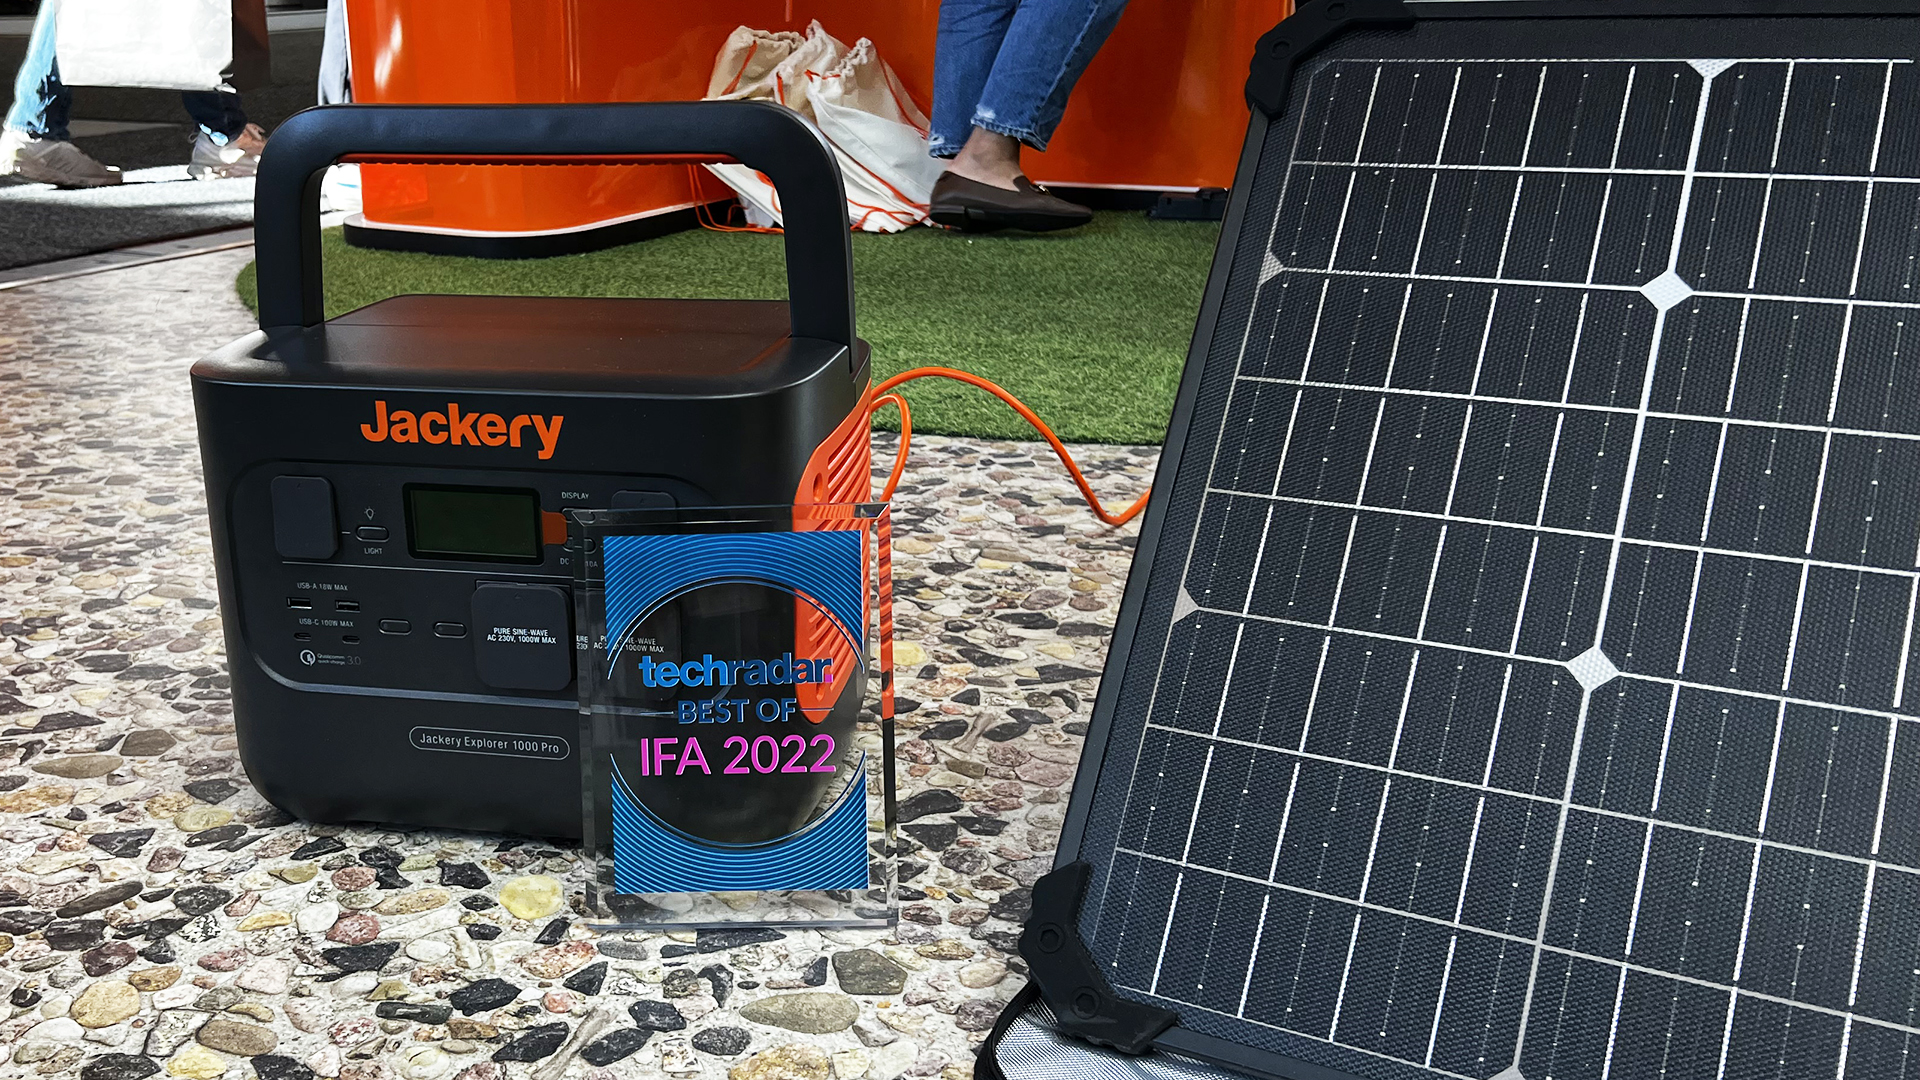 IFA 2022 award with Jackery Solar Generator 1000 Pro.